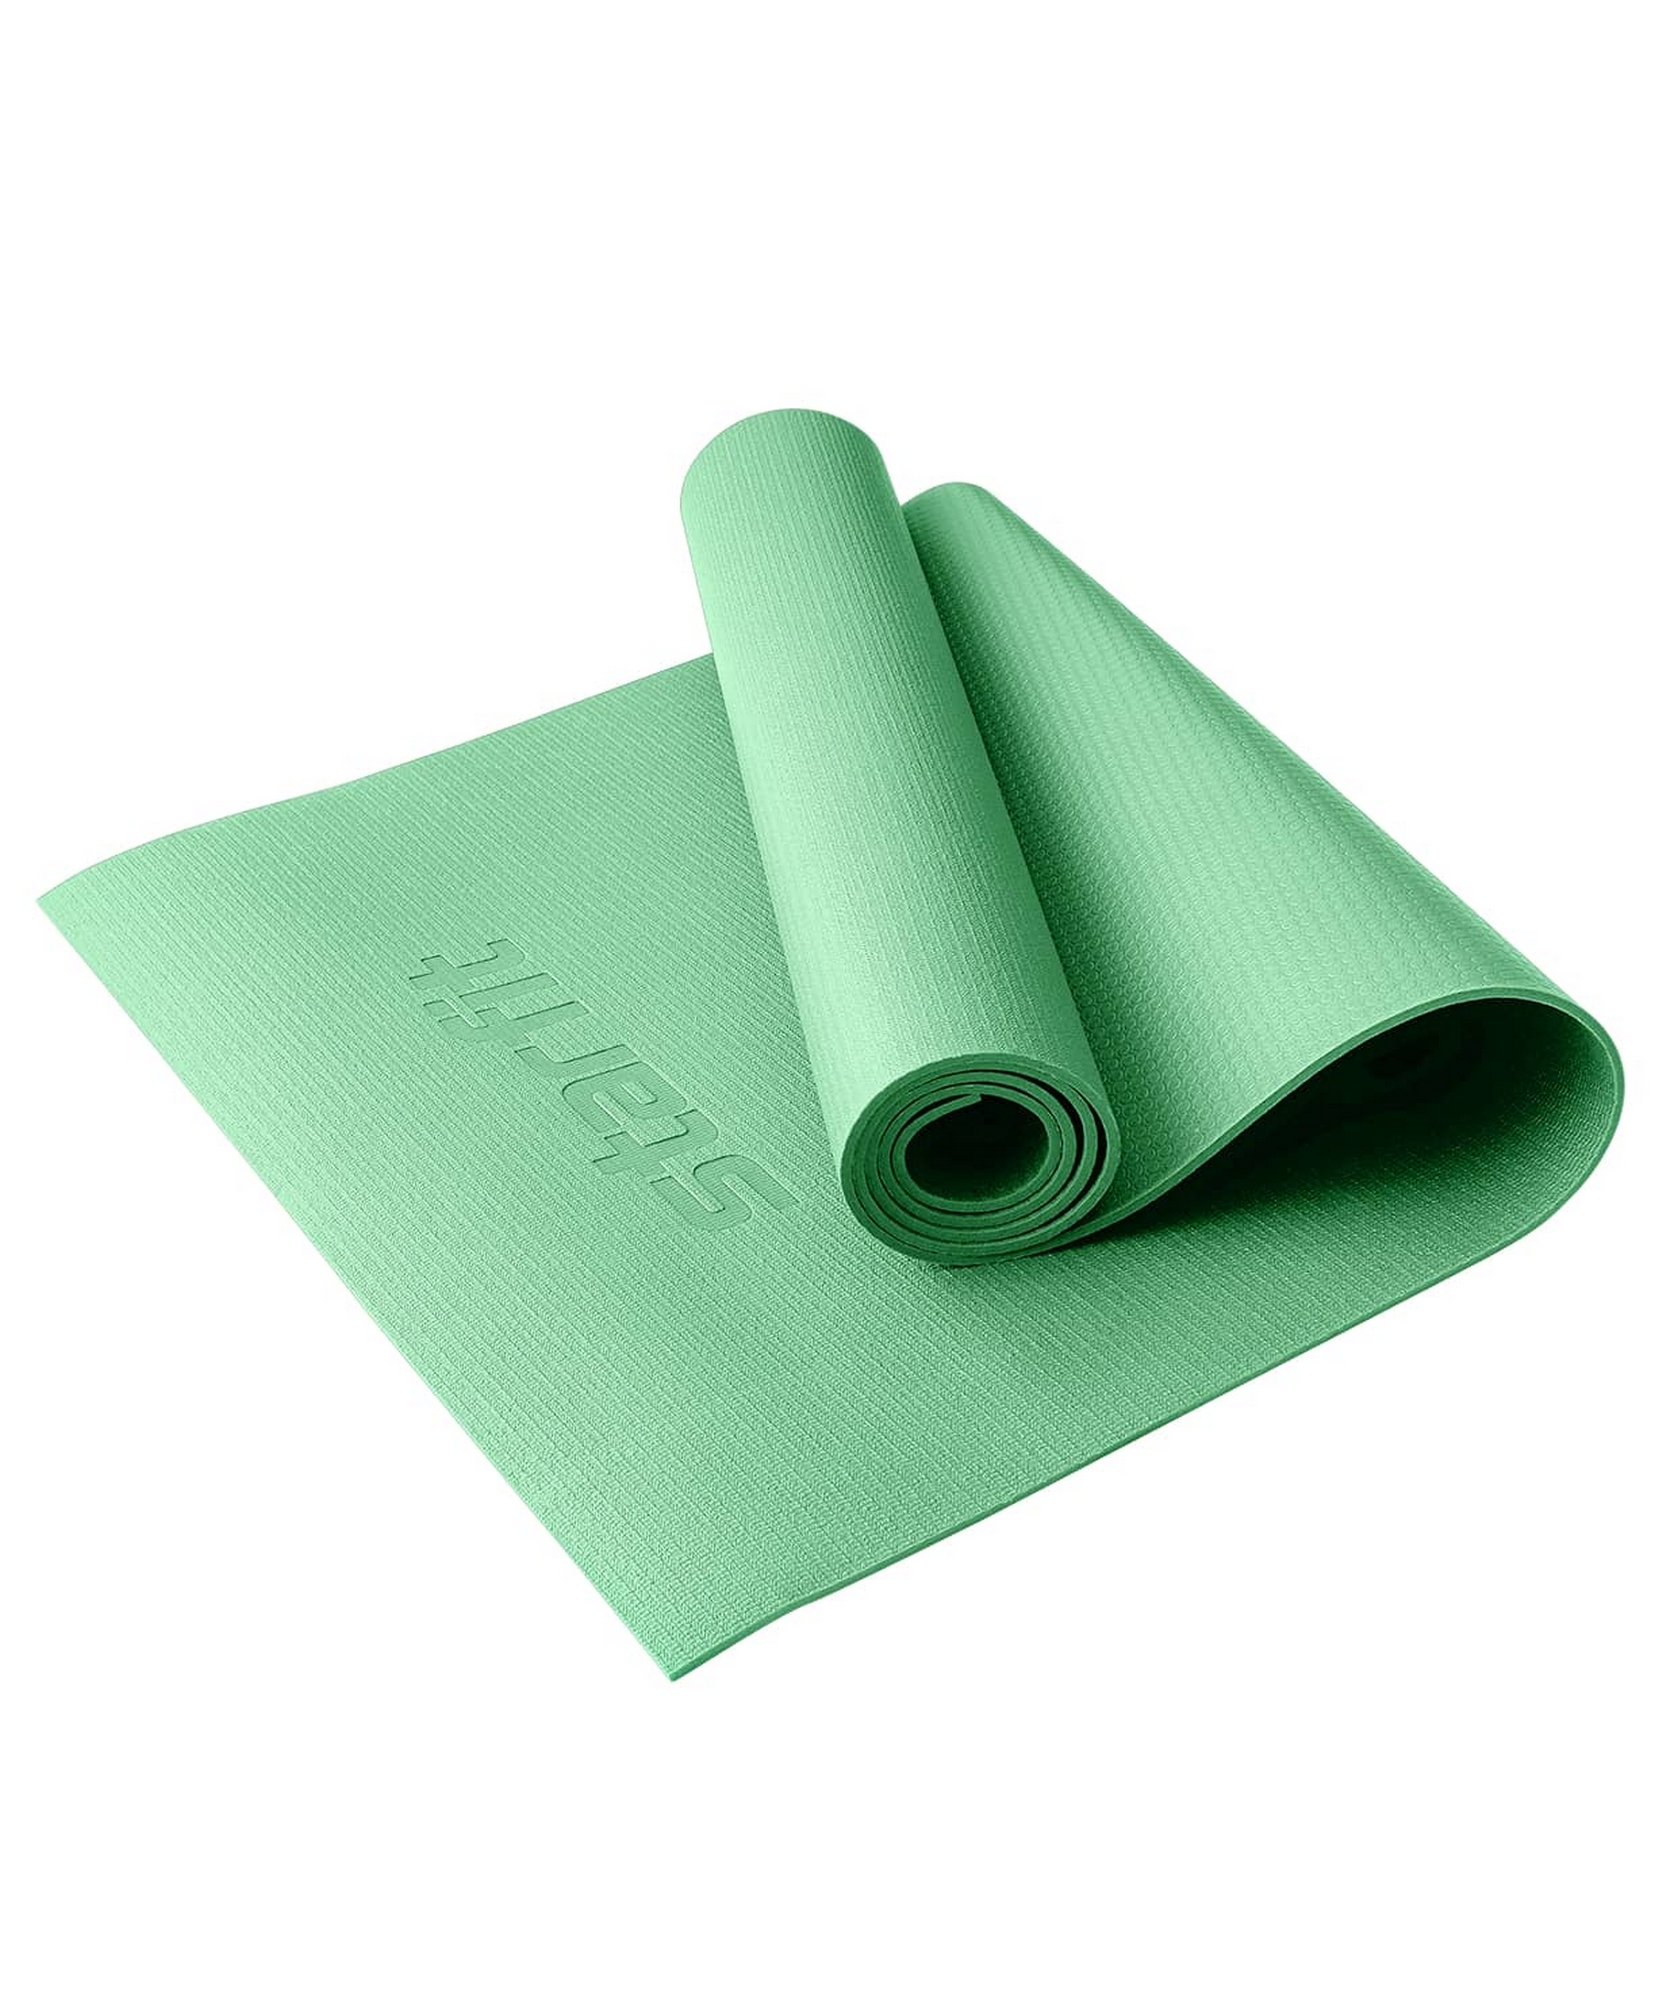 Коврик для йоги и фитнеса высокой плотности 183x61x0,4см Star Fit PVC HD FM-103 зеленый чай 1663_2000